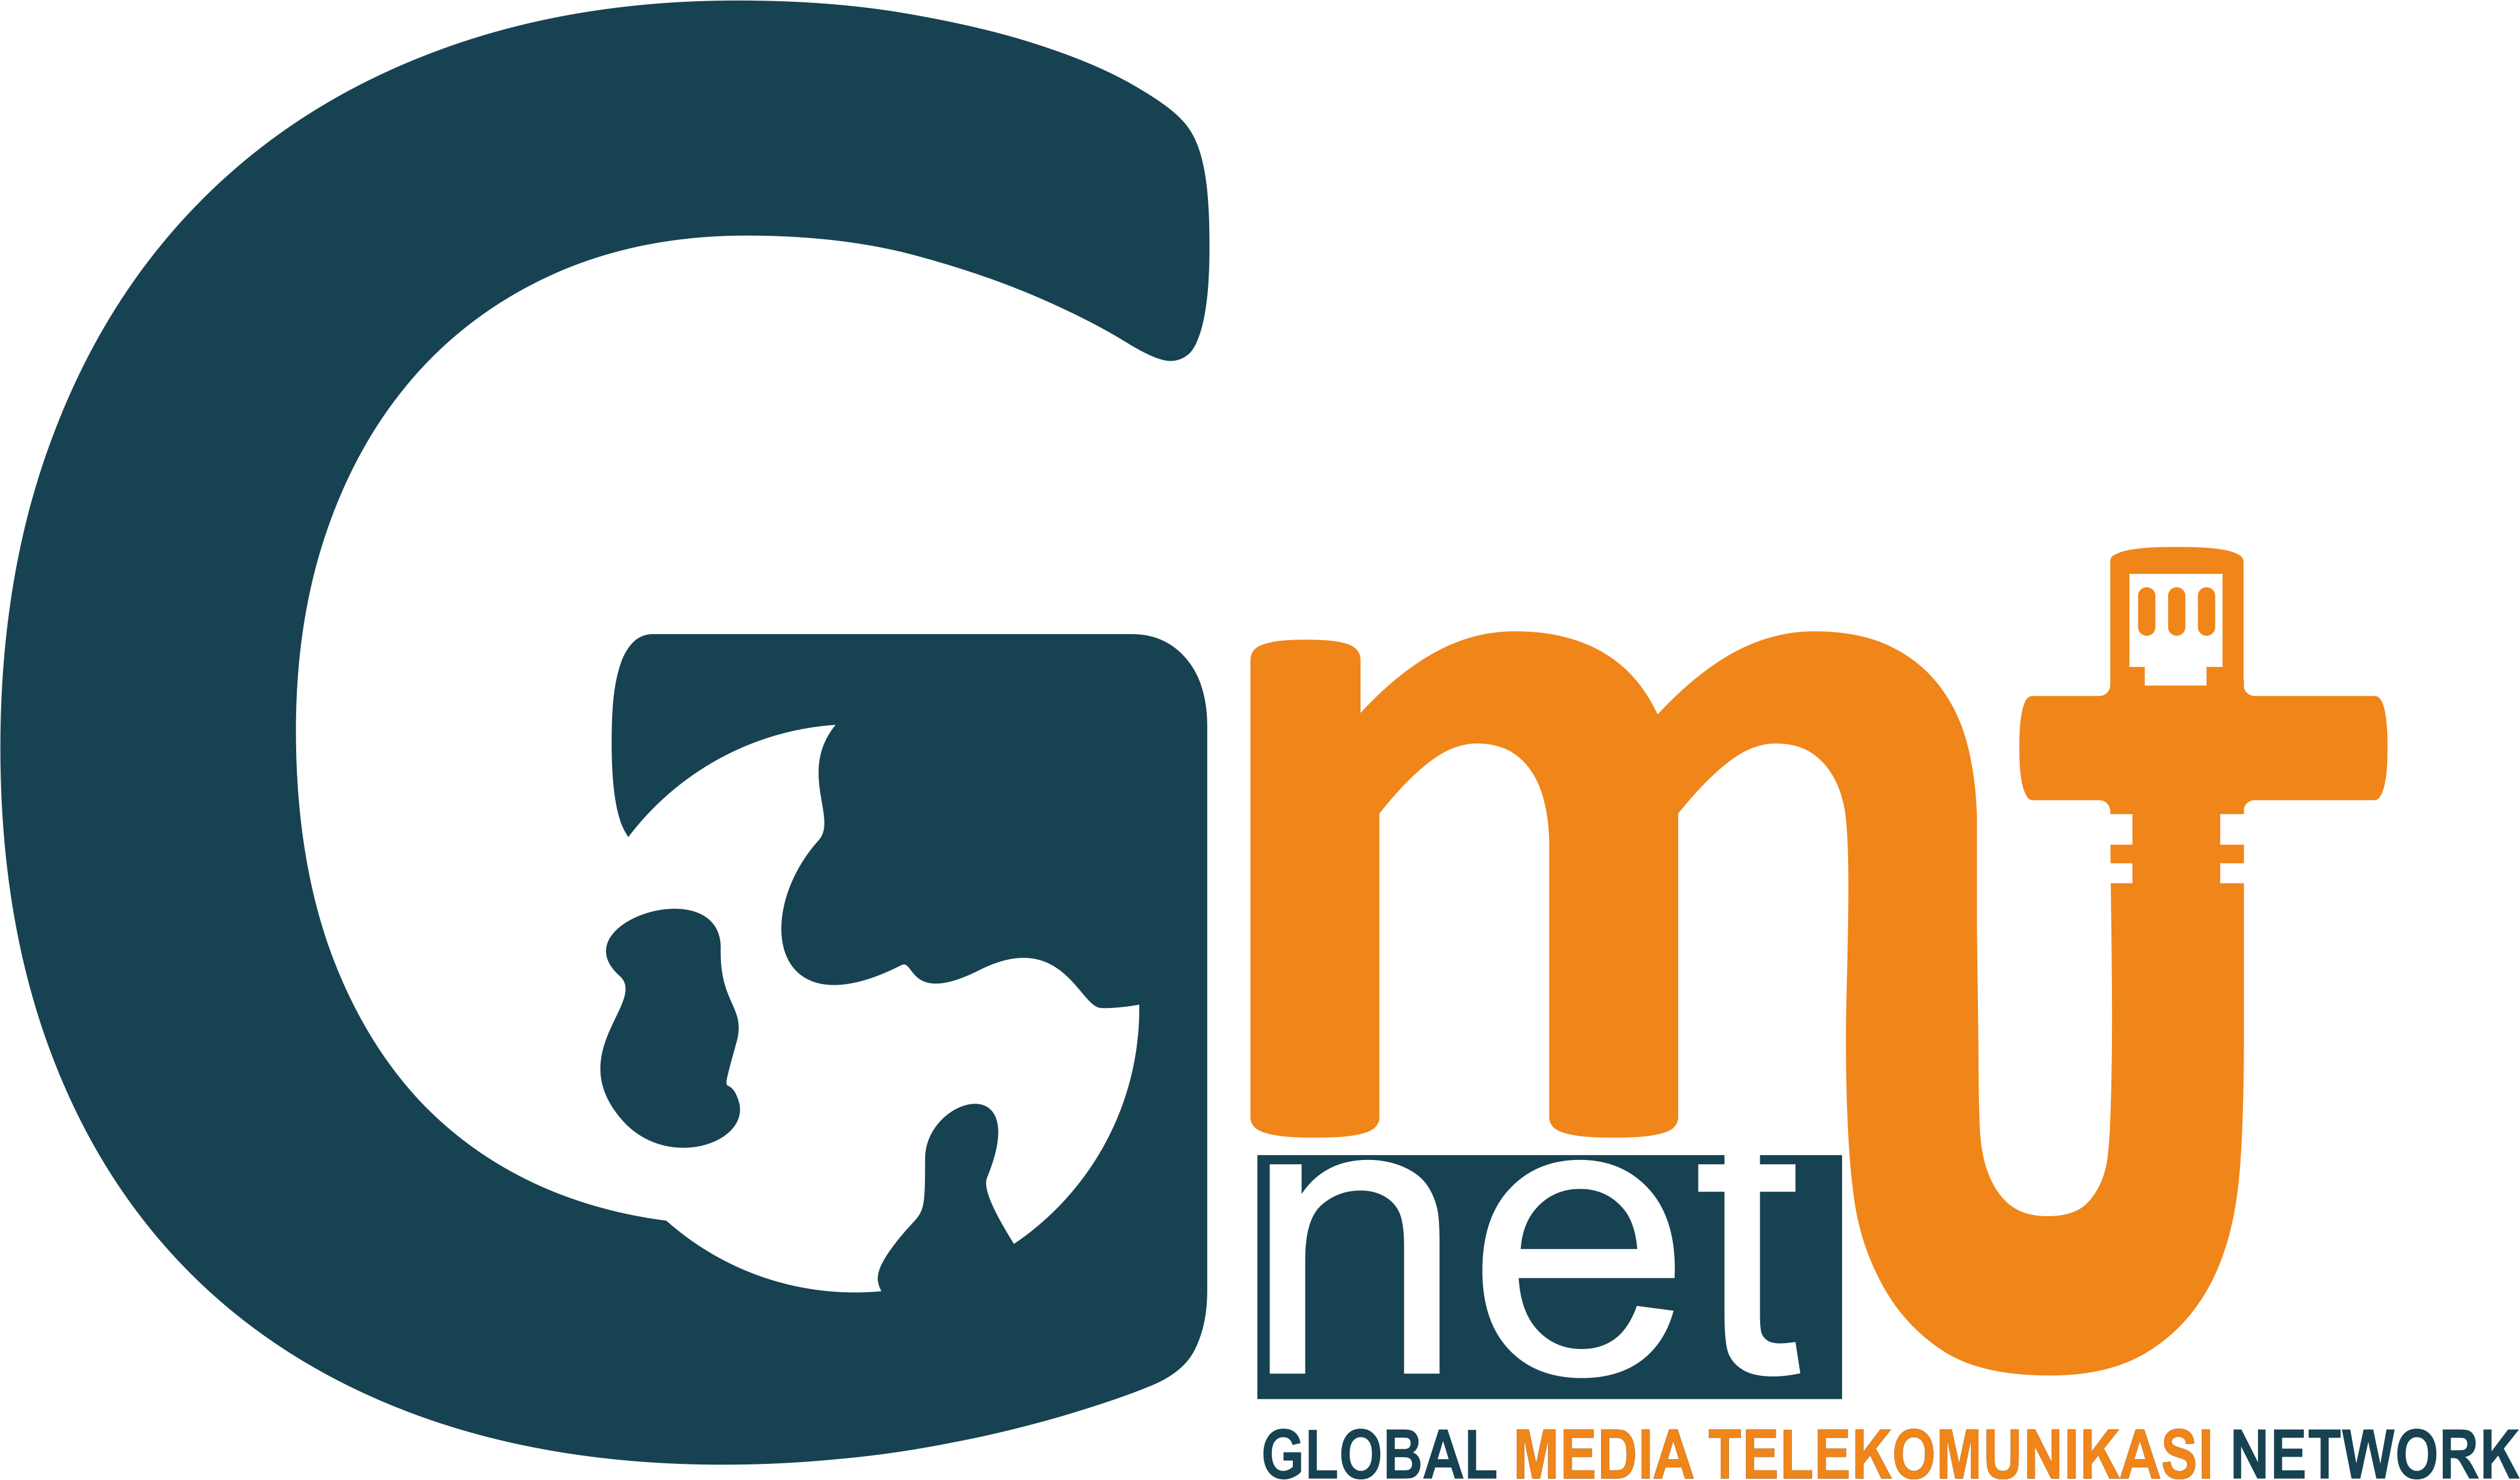 PT. GLOBAL MEDIA TELEKOMUNIKASI NETWORK